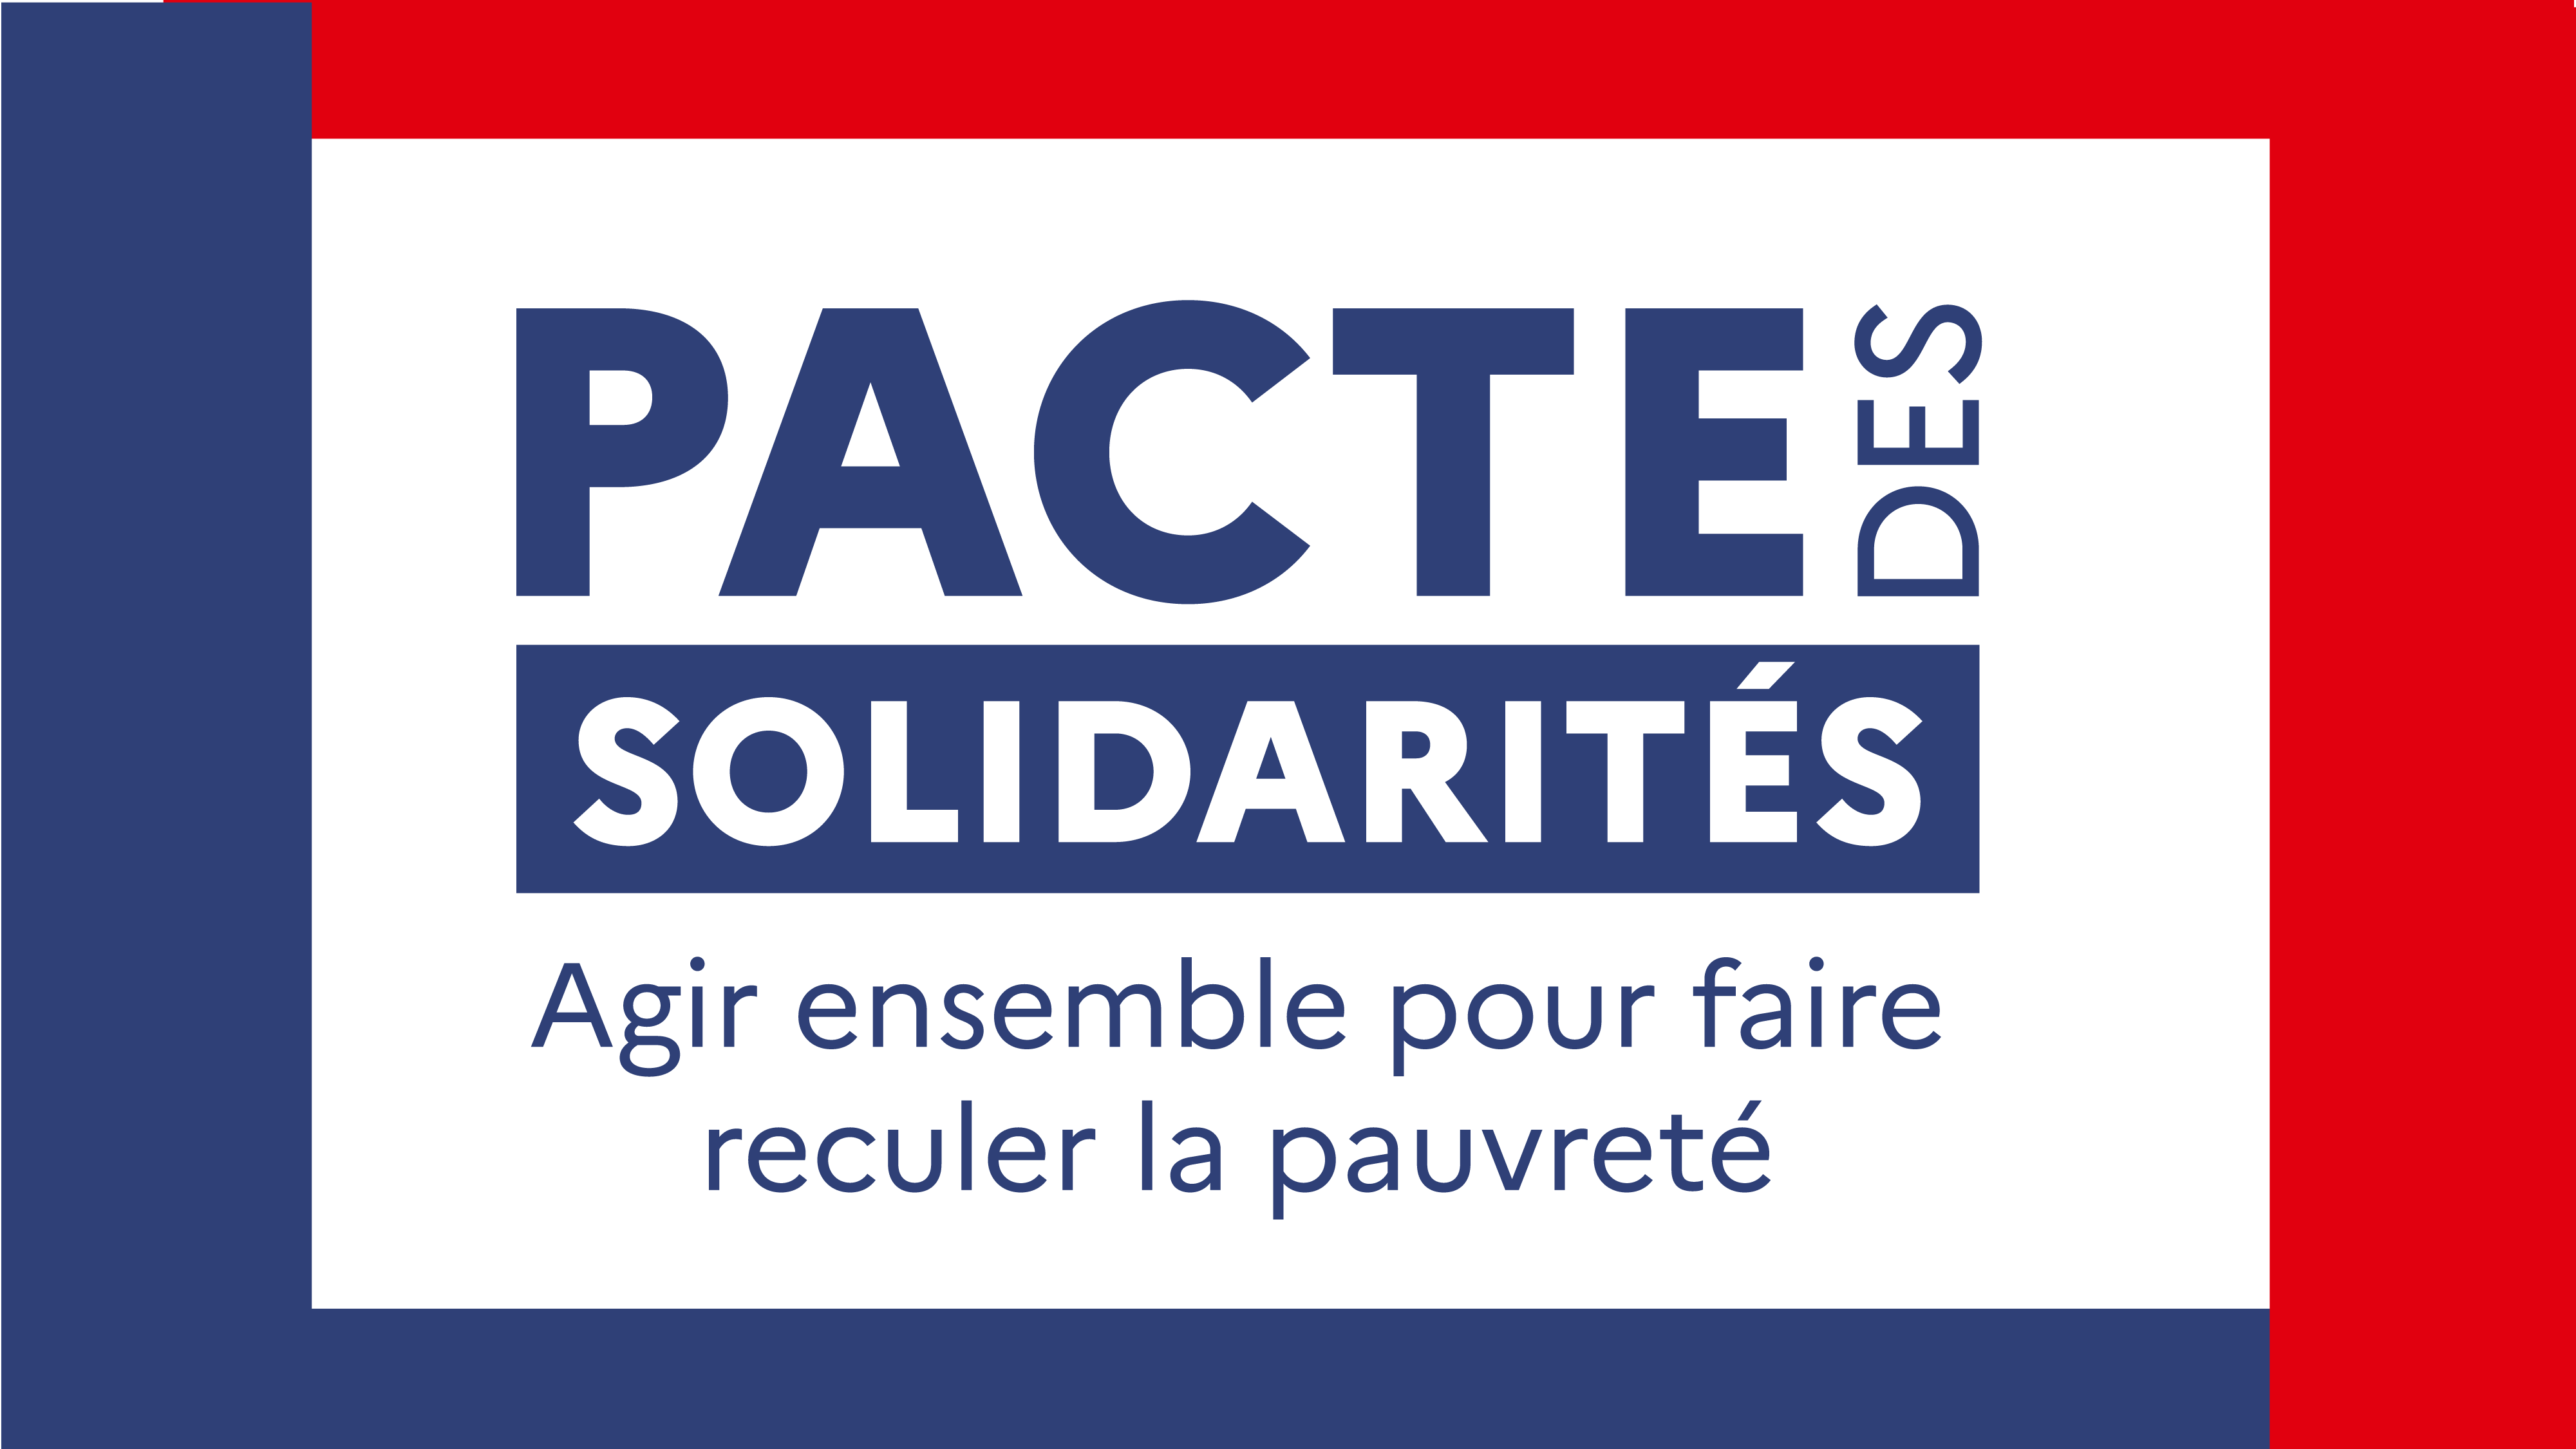 Le Pactes des solidarités succède à la stratégie de prévention et de lutte contre la pauvreté